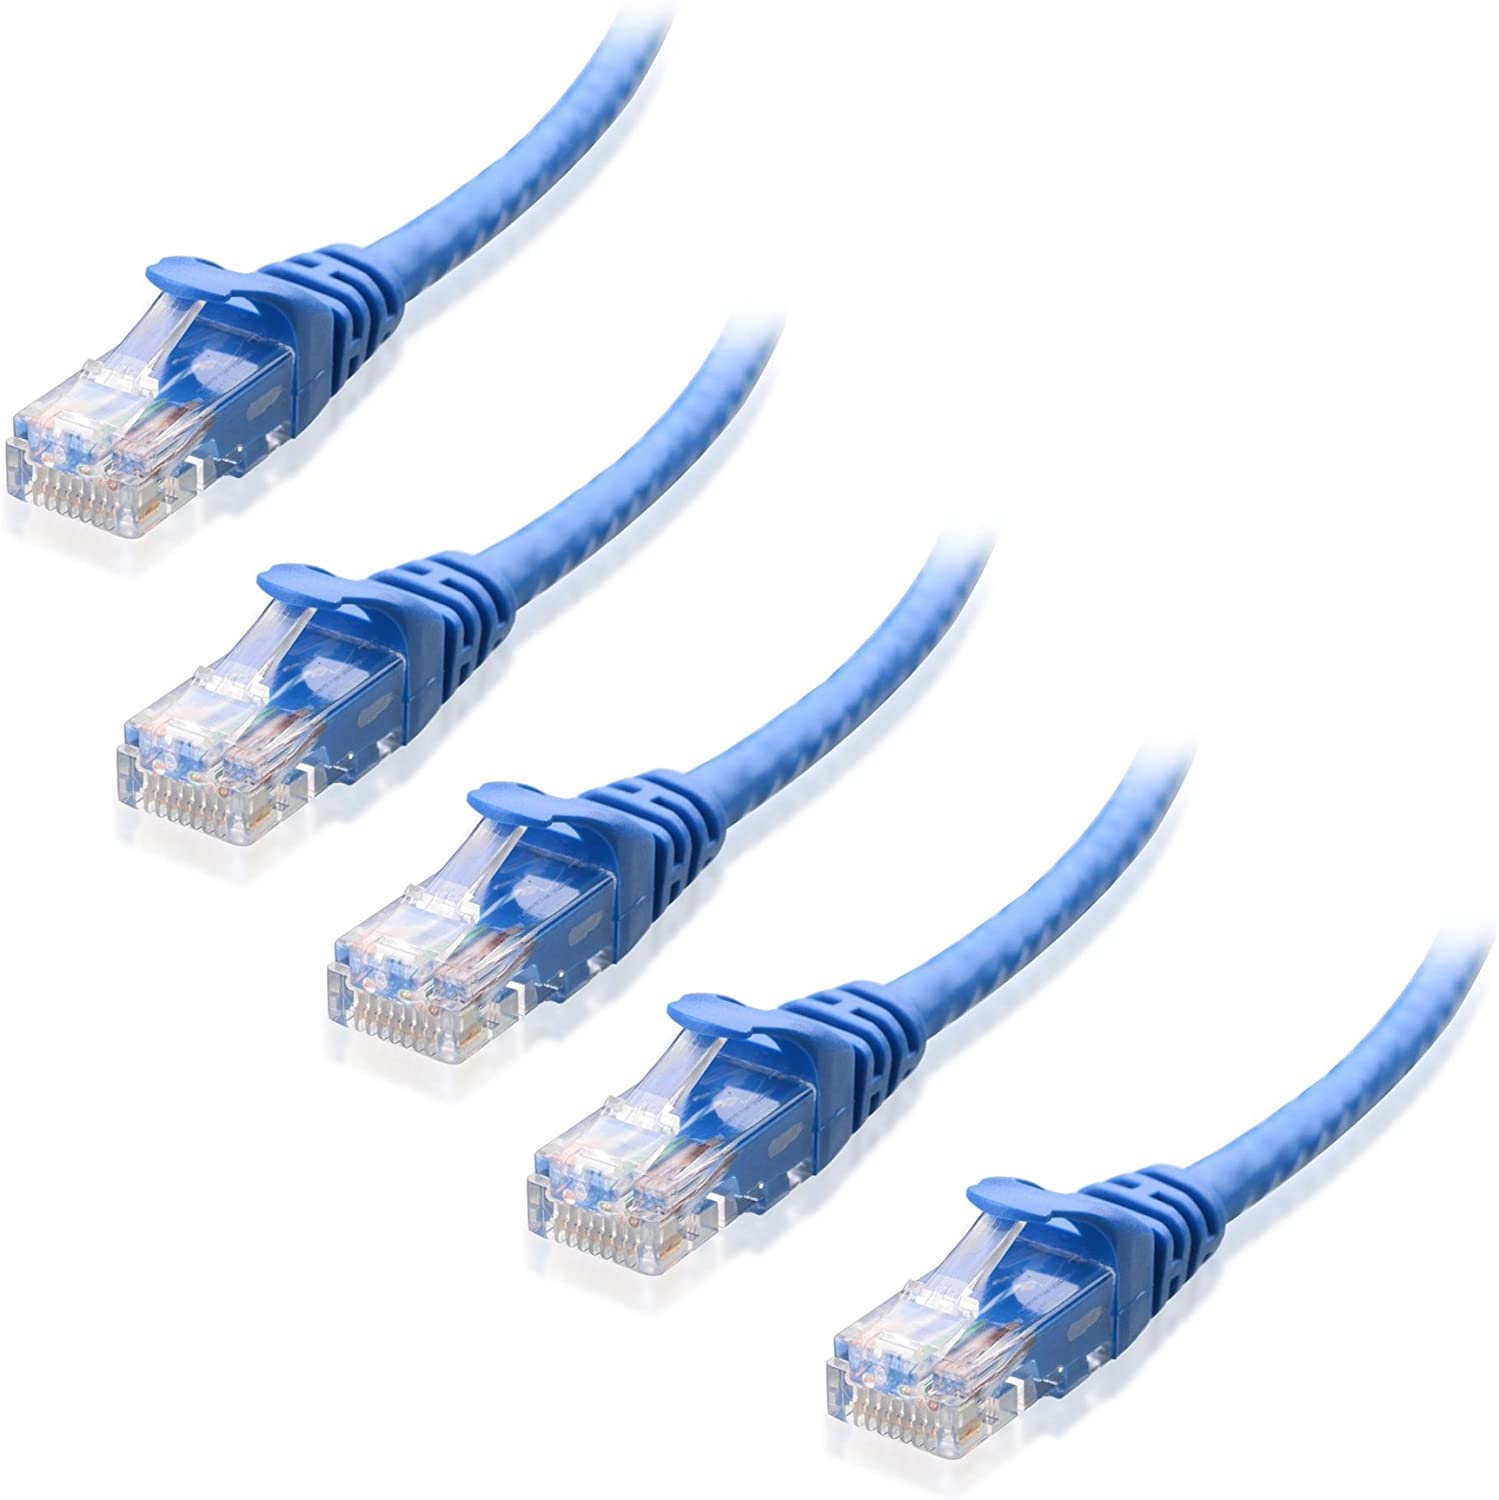 Blue_Ethernet_Cables__1_ft__-_5_Pack.jpg